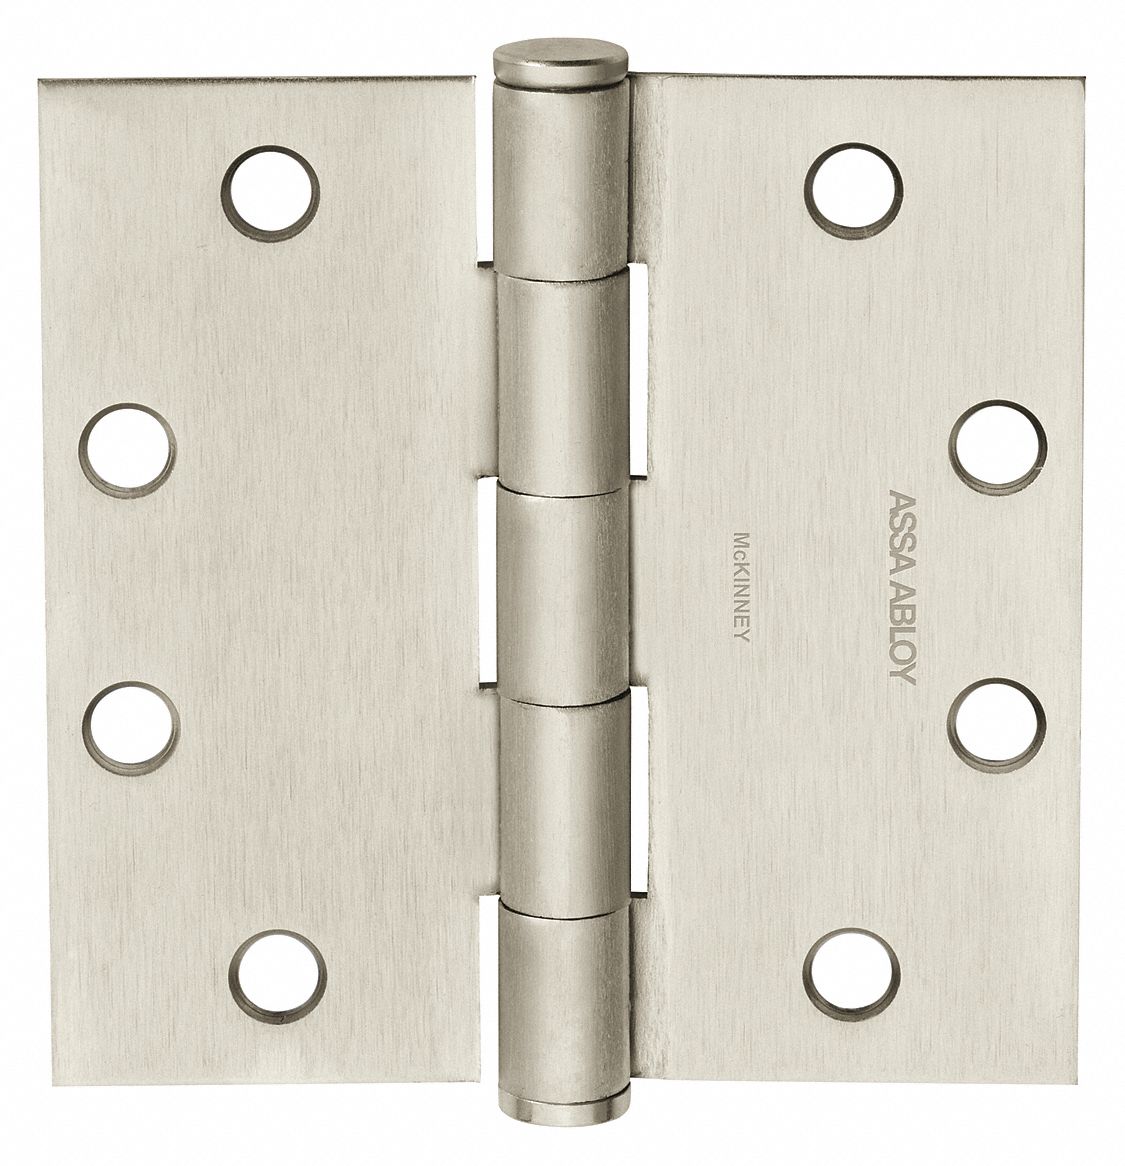 Stainless Steel Door Hinge 5 Inch Ball Bearing Hinges Satin Nickel Plating Suit Internal Doors Pair Sold As A Pair + Screws ,A,1PACK 